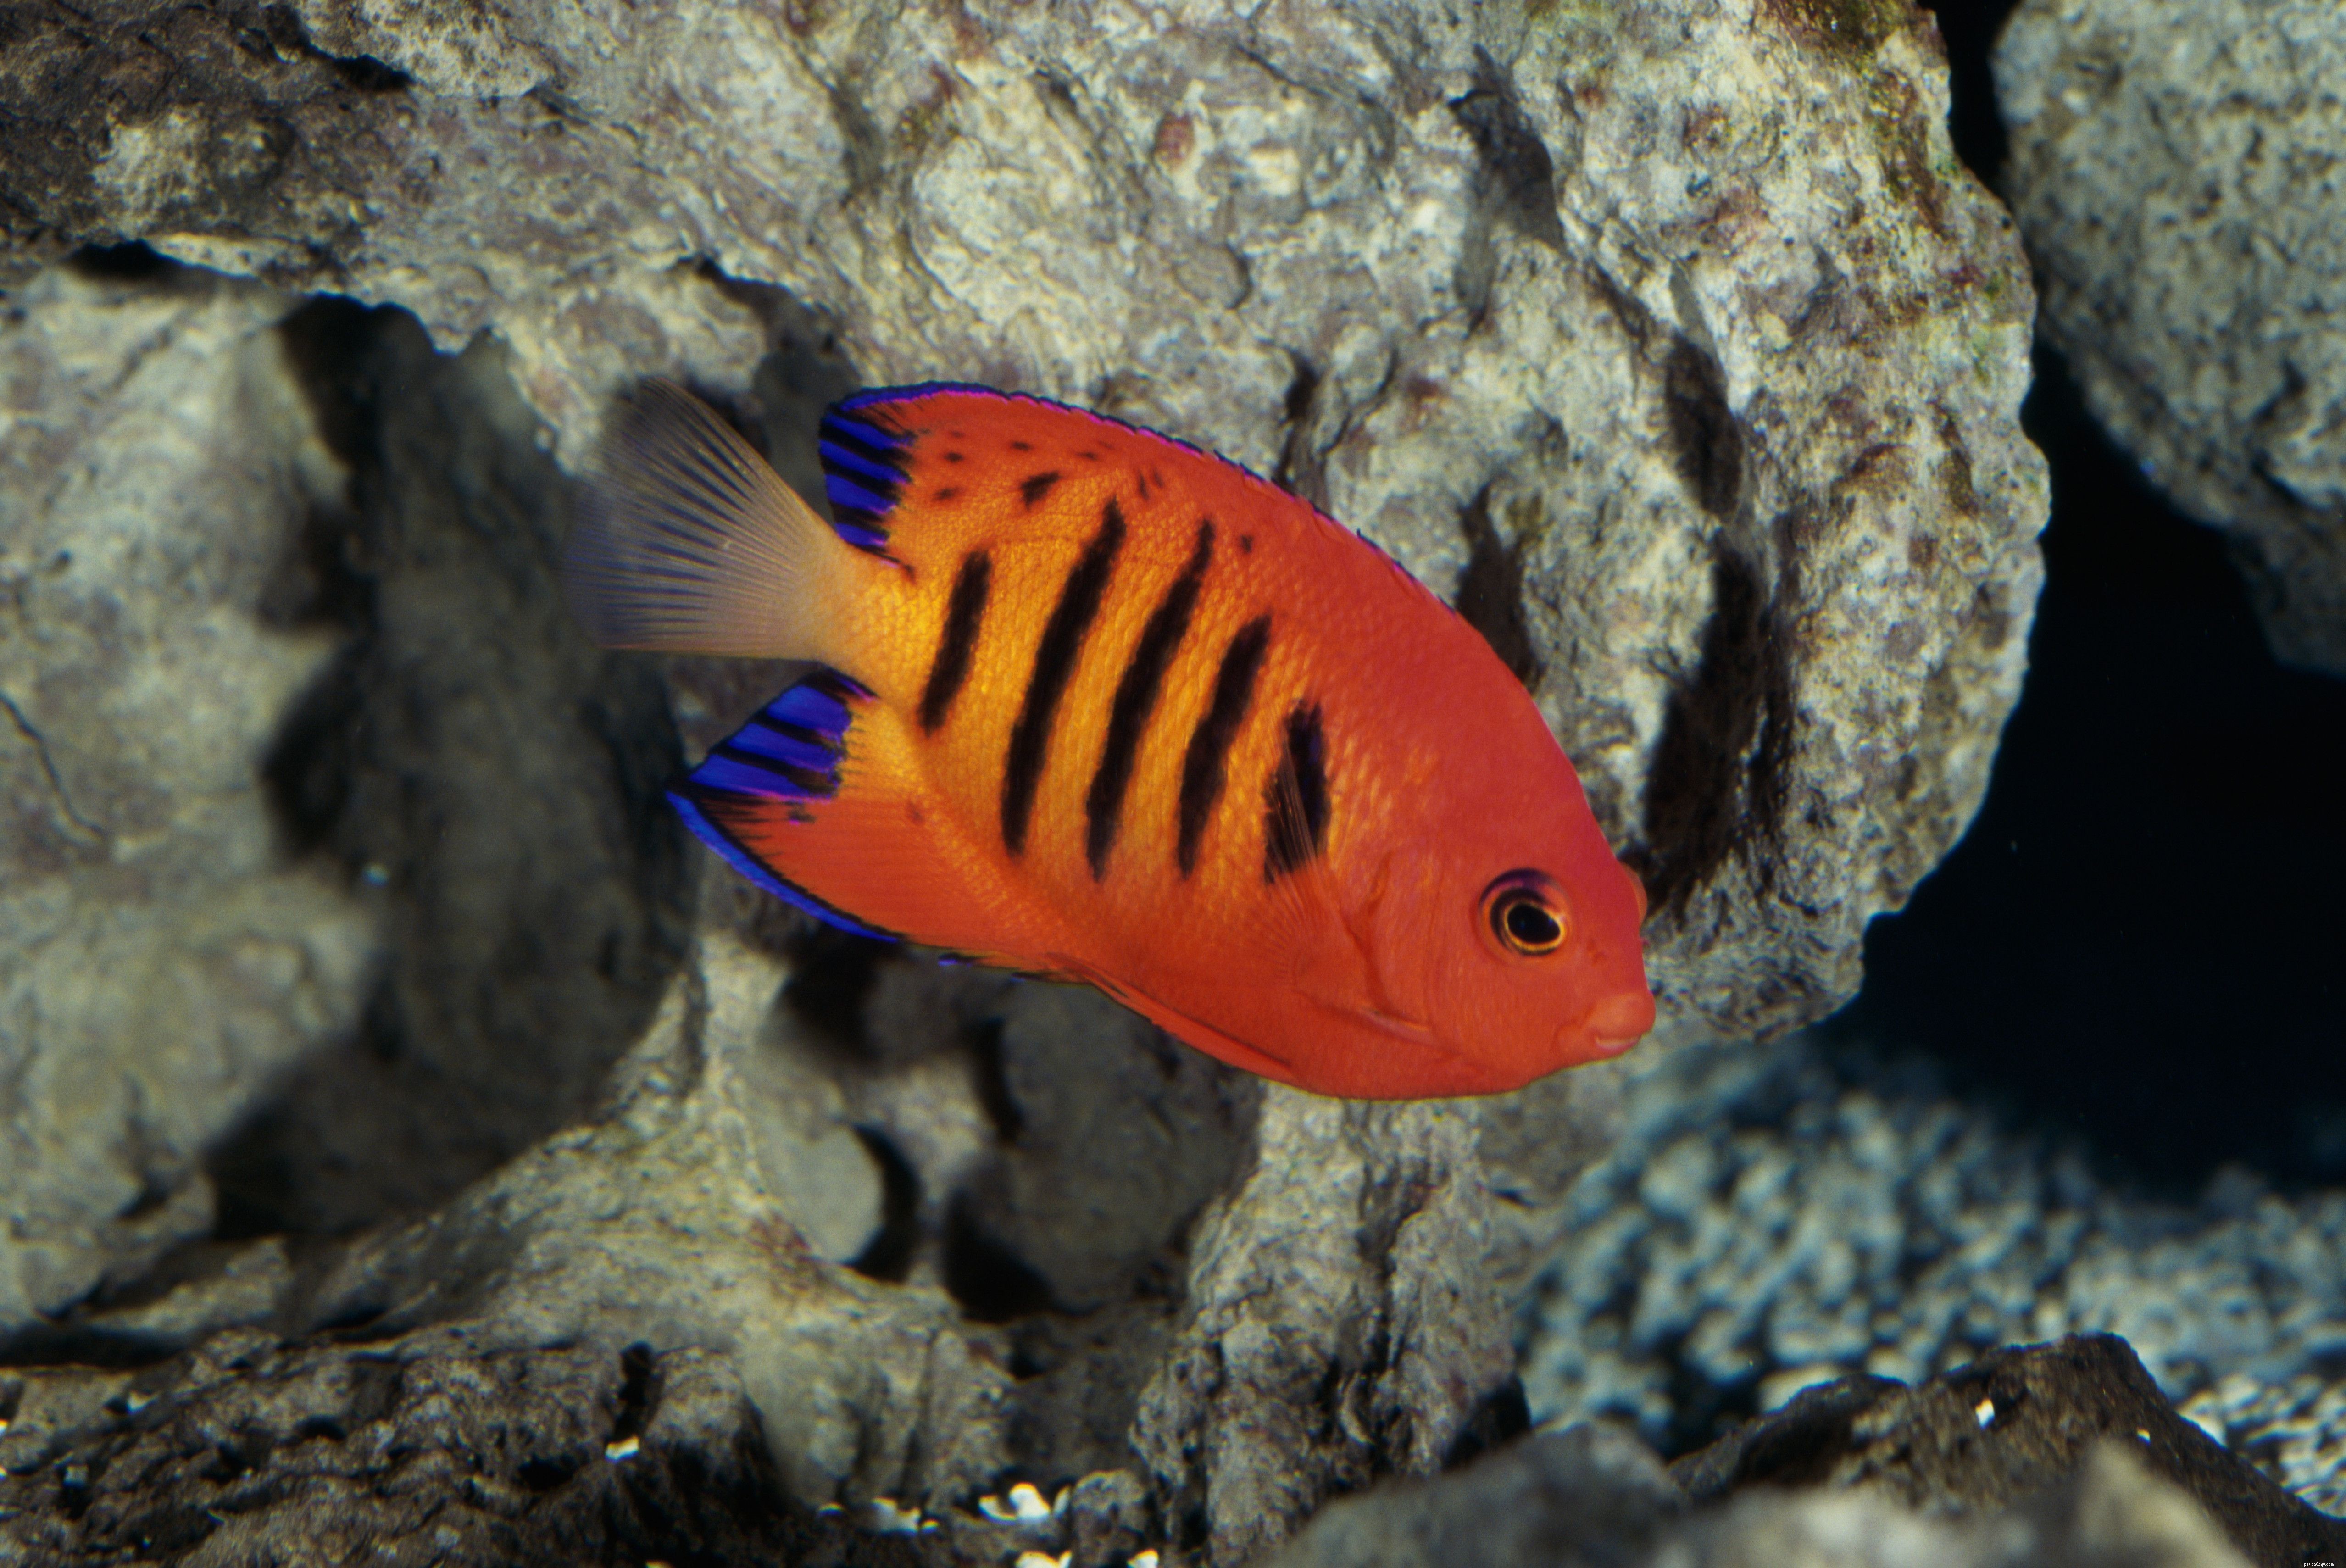 Välja den bästa saltvattensegelfisken för ditt akvarium